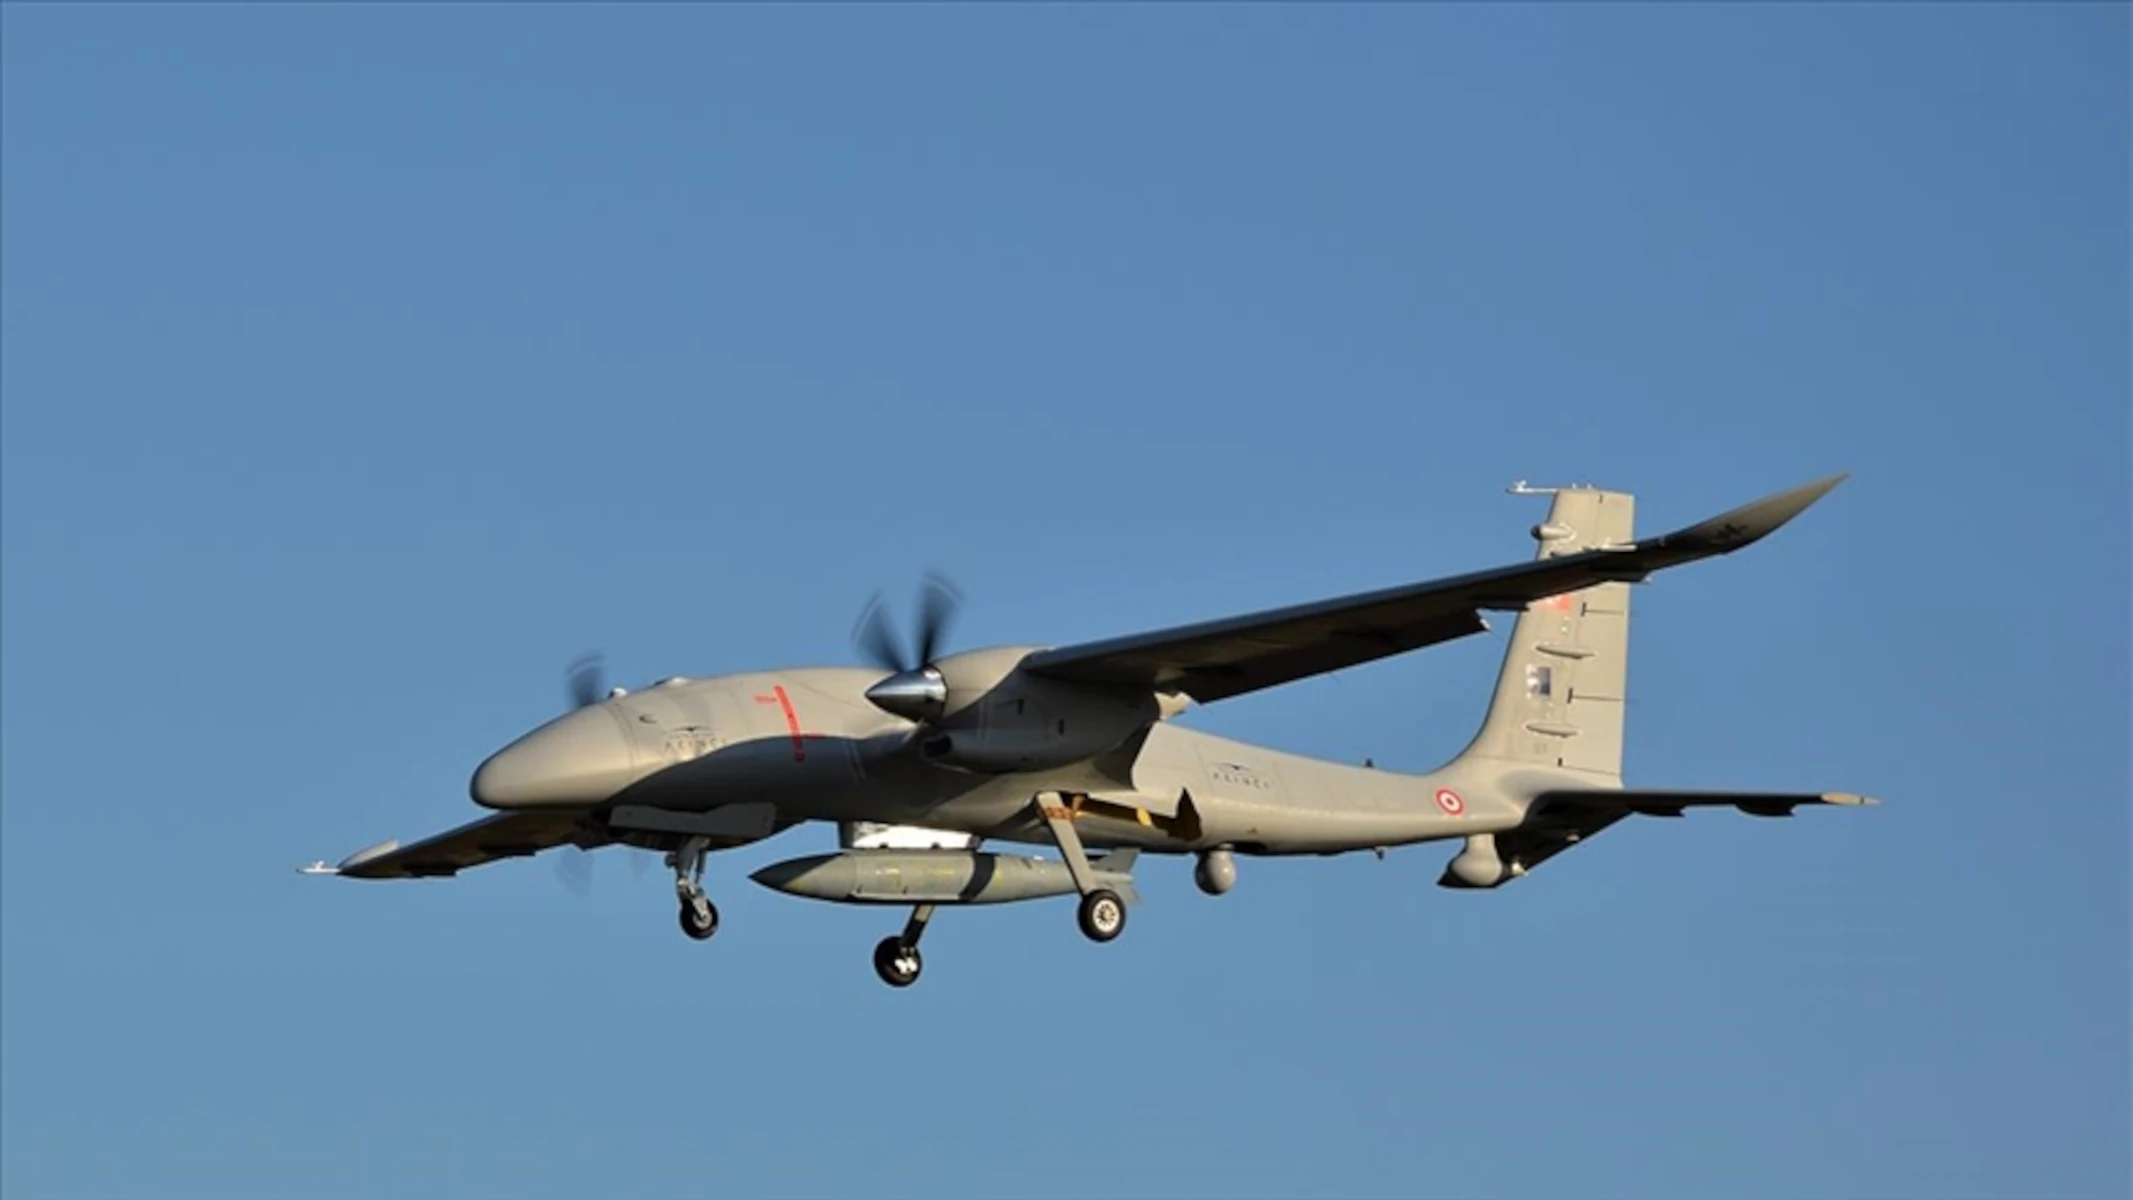 Il drone d'attacco Bayraktar AKINCI con motore ucraino partecipa per la prima volta ad esercitazioni internazionali che coinvolgono elementi della NATO